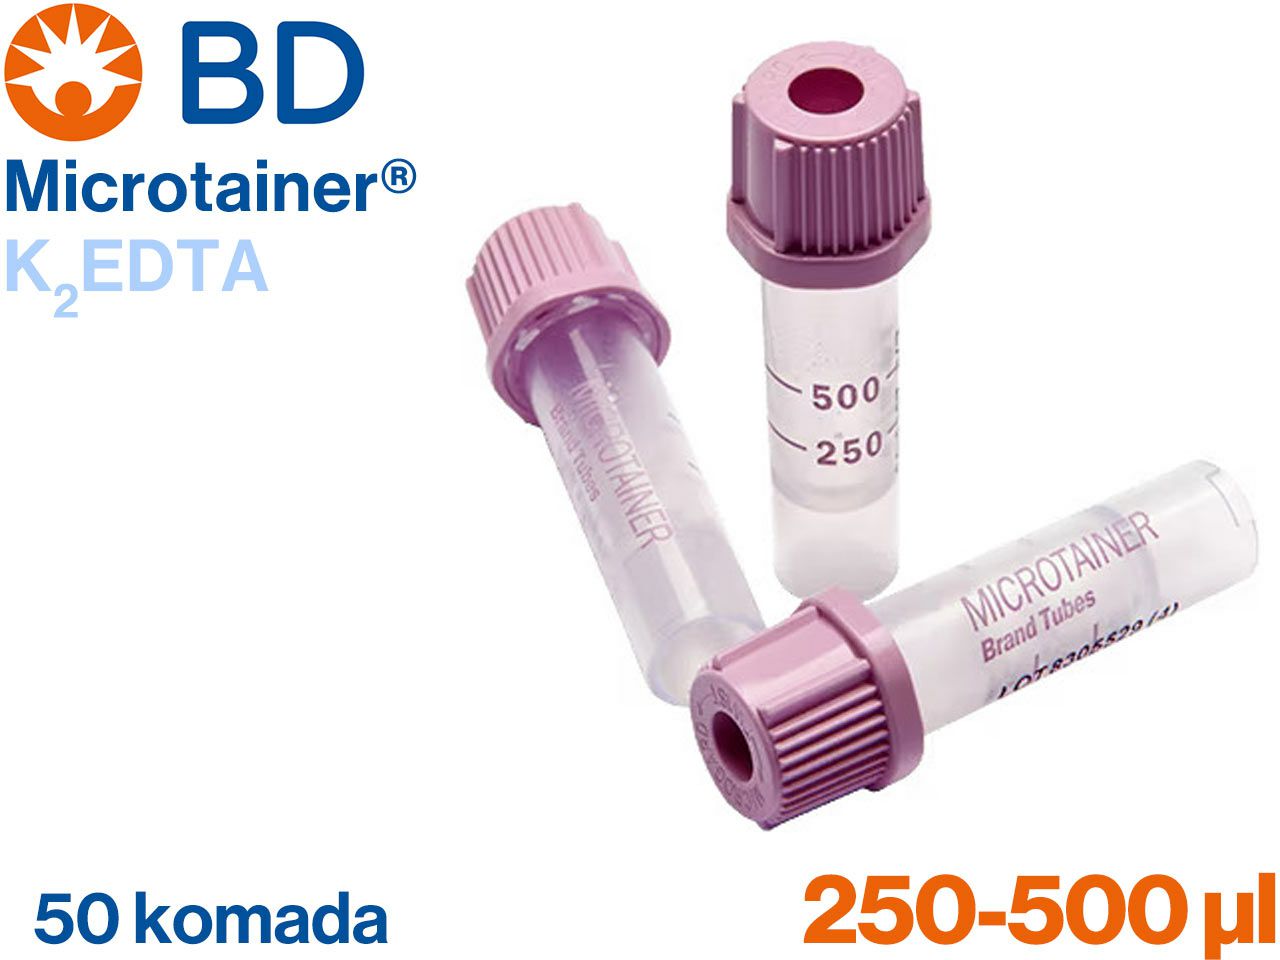 microtainer-k2edta-za-hematologiju-250-500-l-50-komada-micr-365975_1.jpg